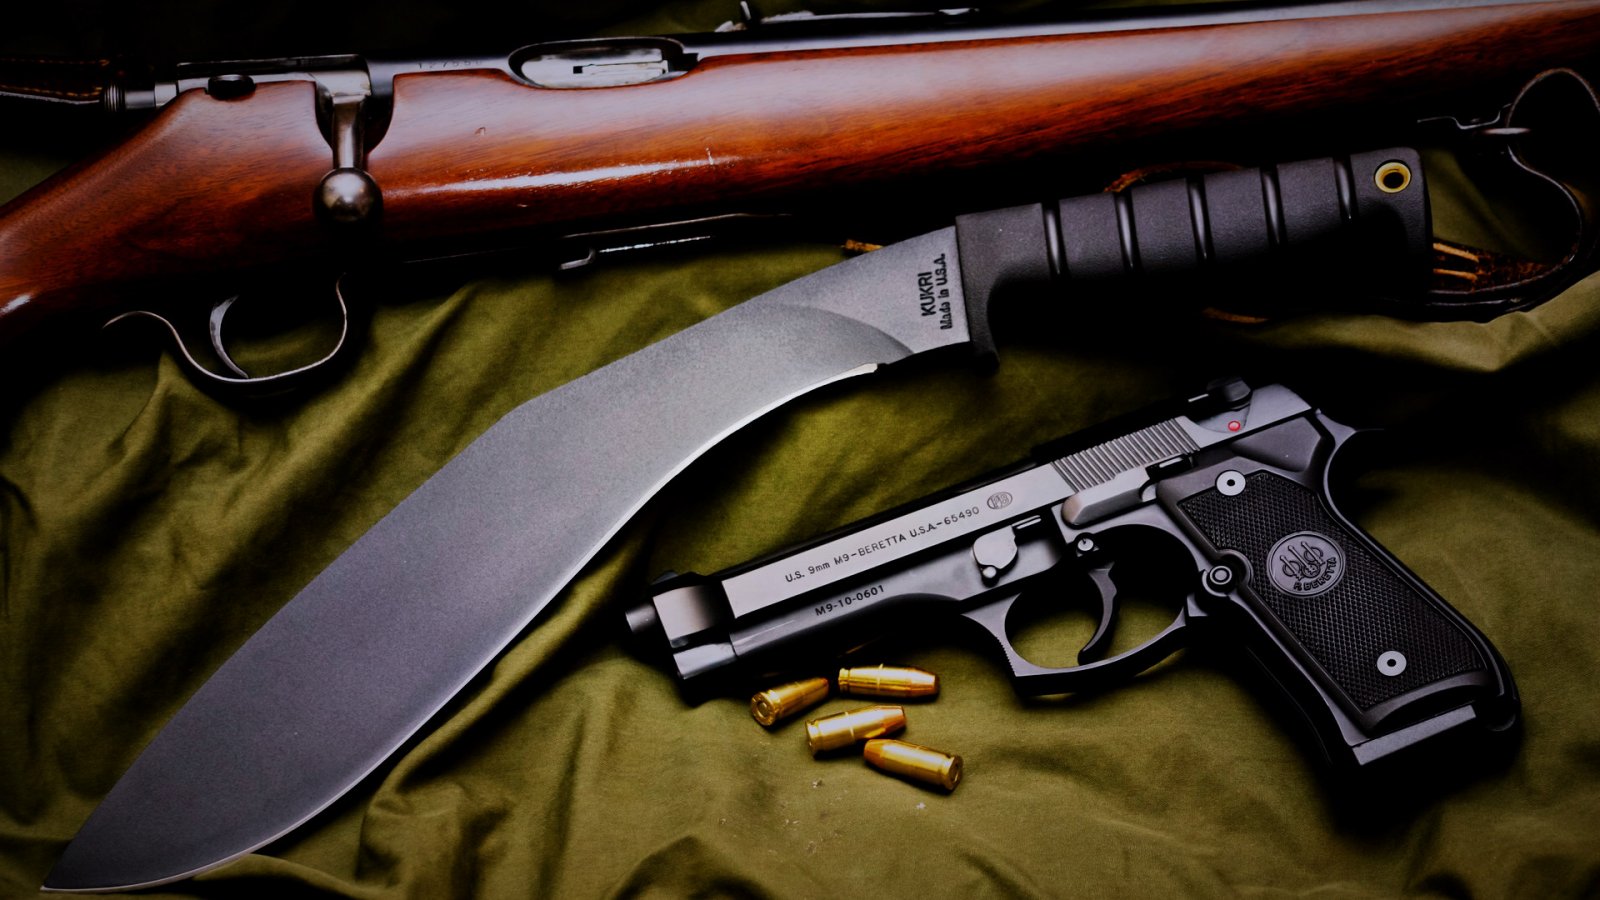 Beretta M9 pistol Widescreen HD Wallpapers 1600x900 hd Other